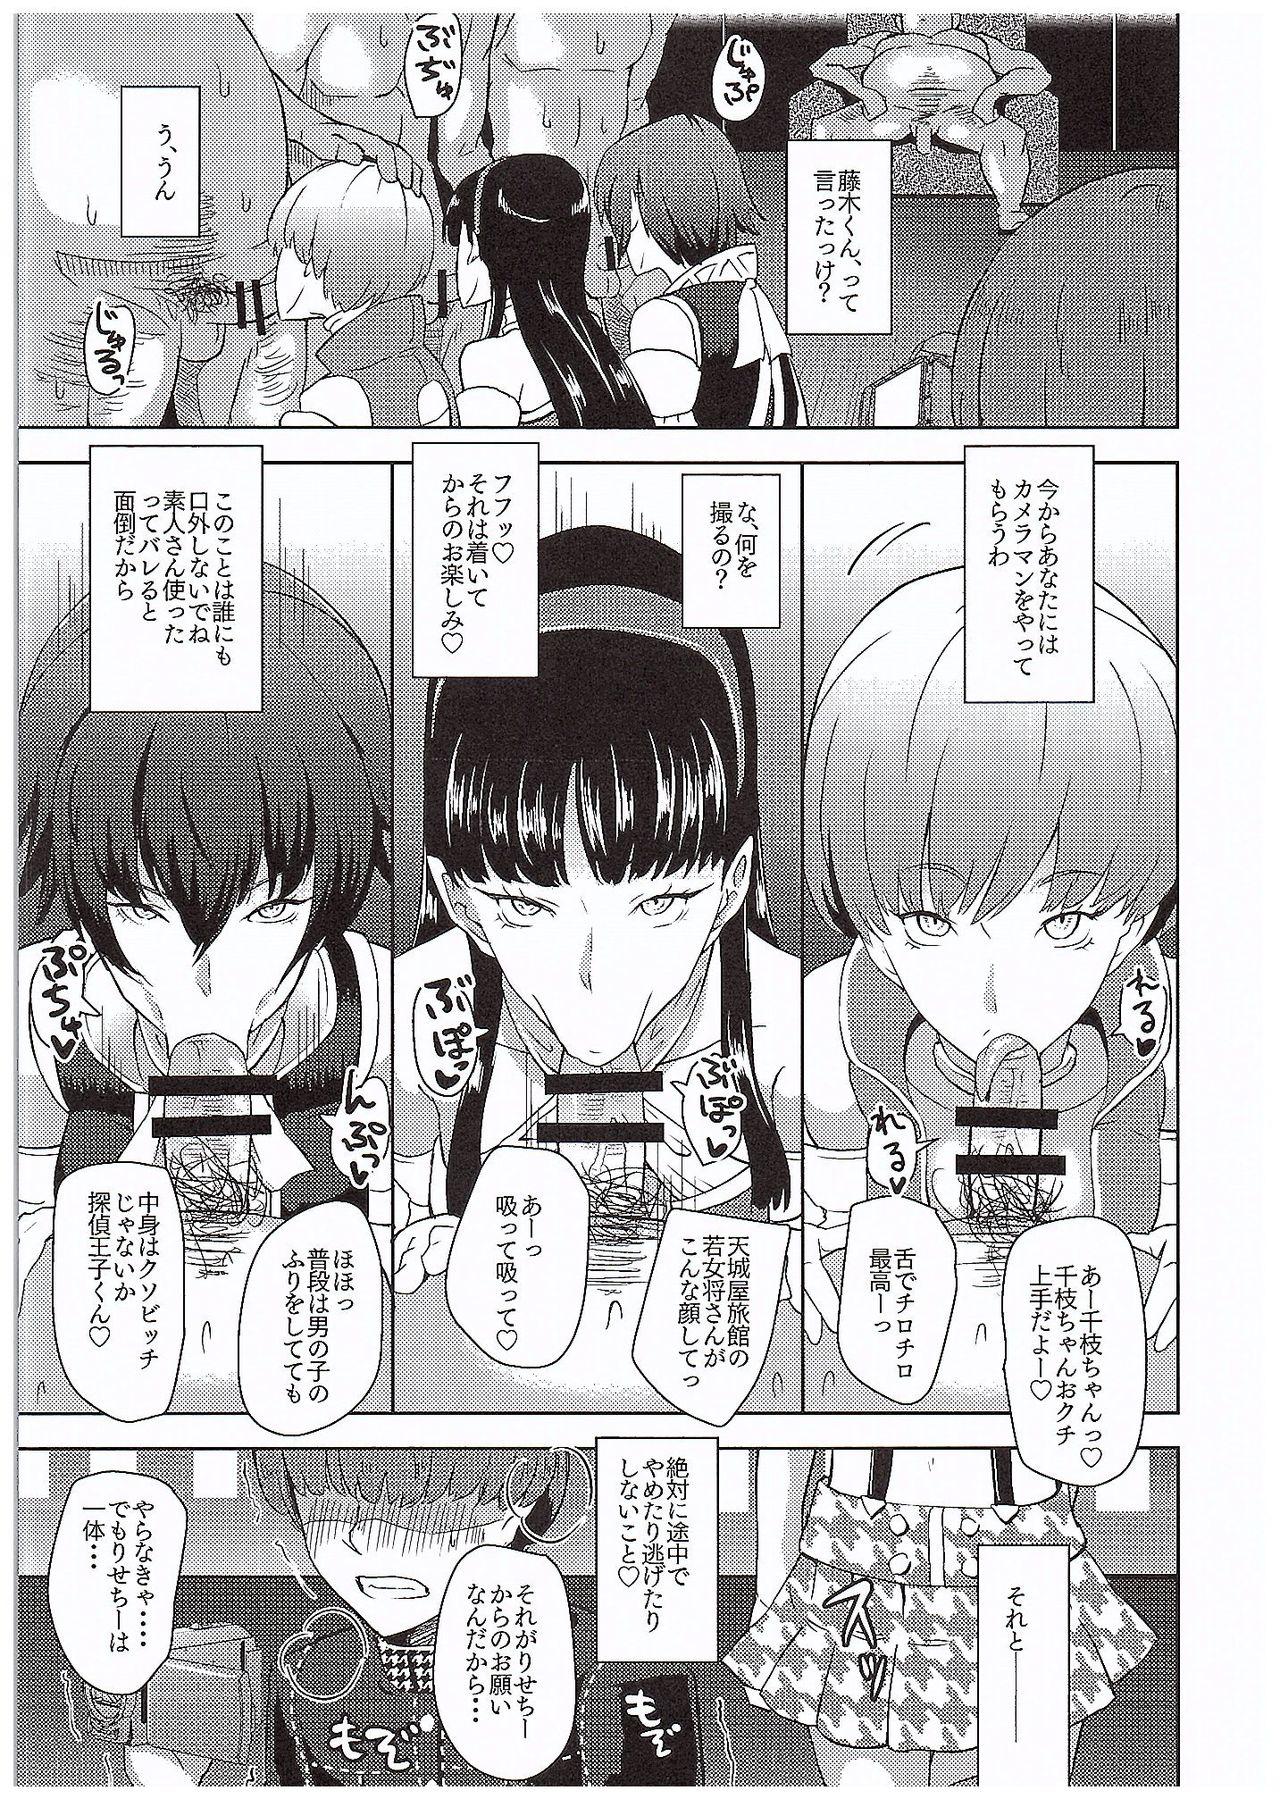 Facebook Shadow World III Kujikawa Rise no Baai - Persona 4 Married - Page 10